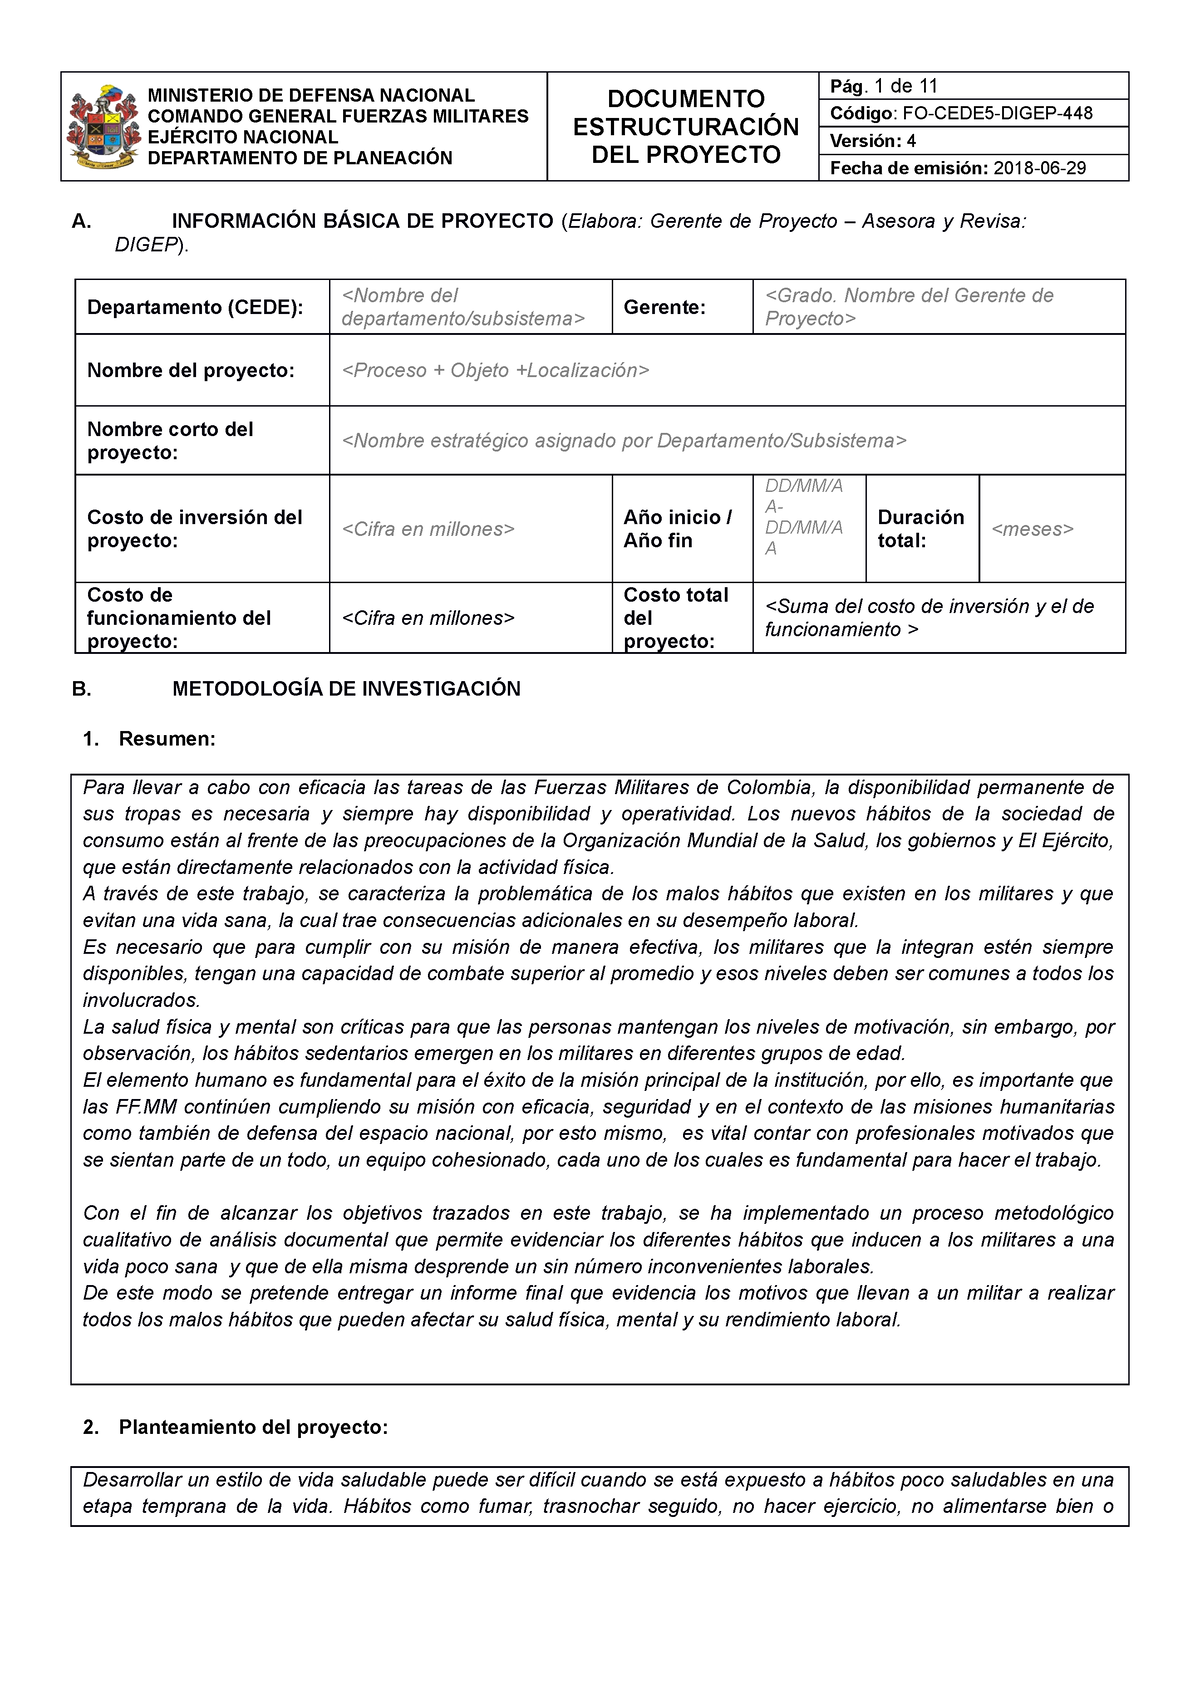 1.FO-CEDE5- Digep-448- Documento EstructuracióN DEL Proyecto ...